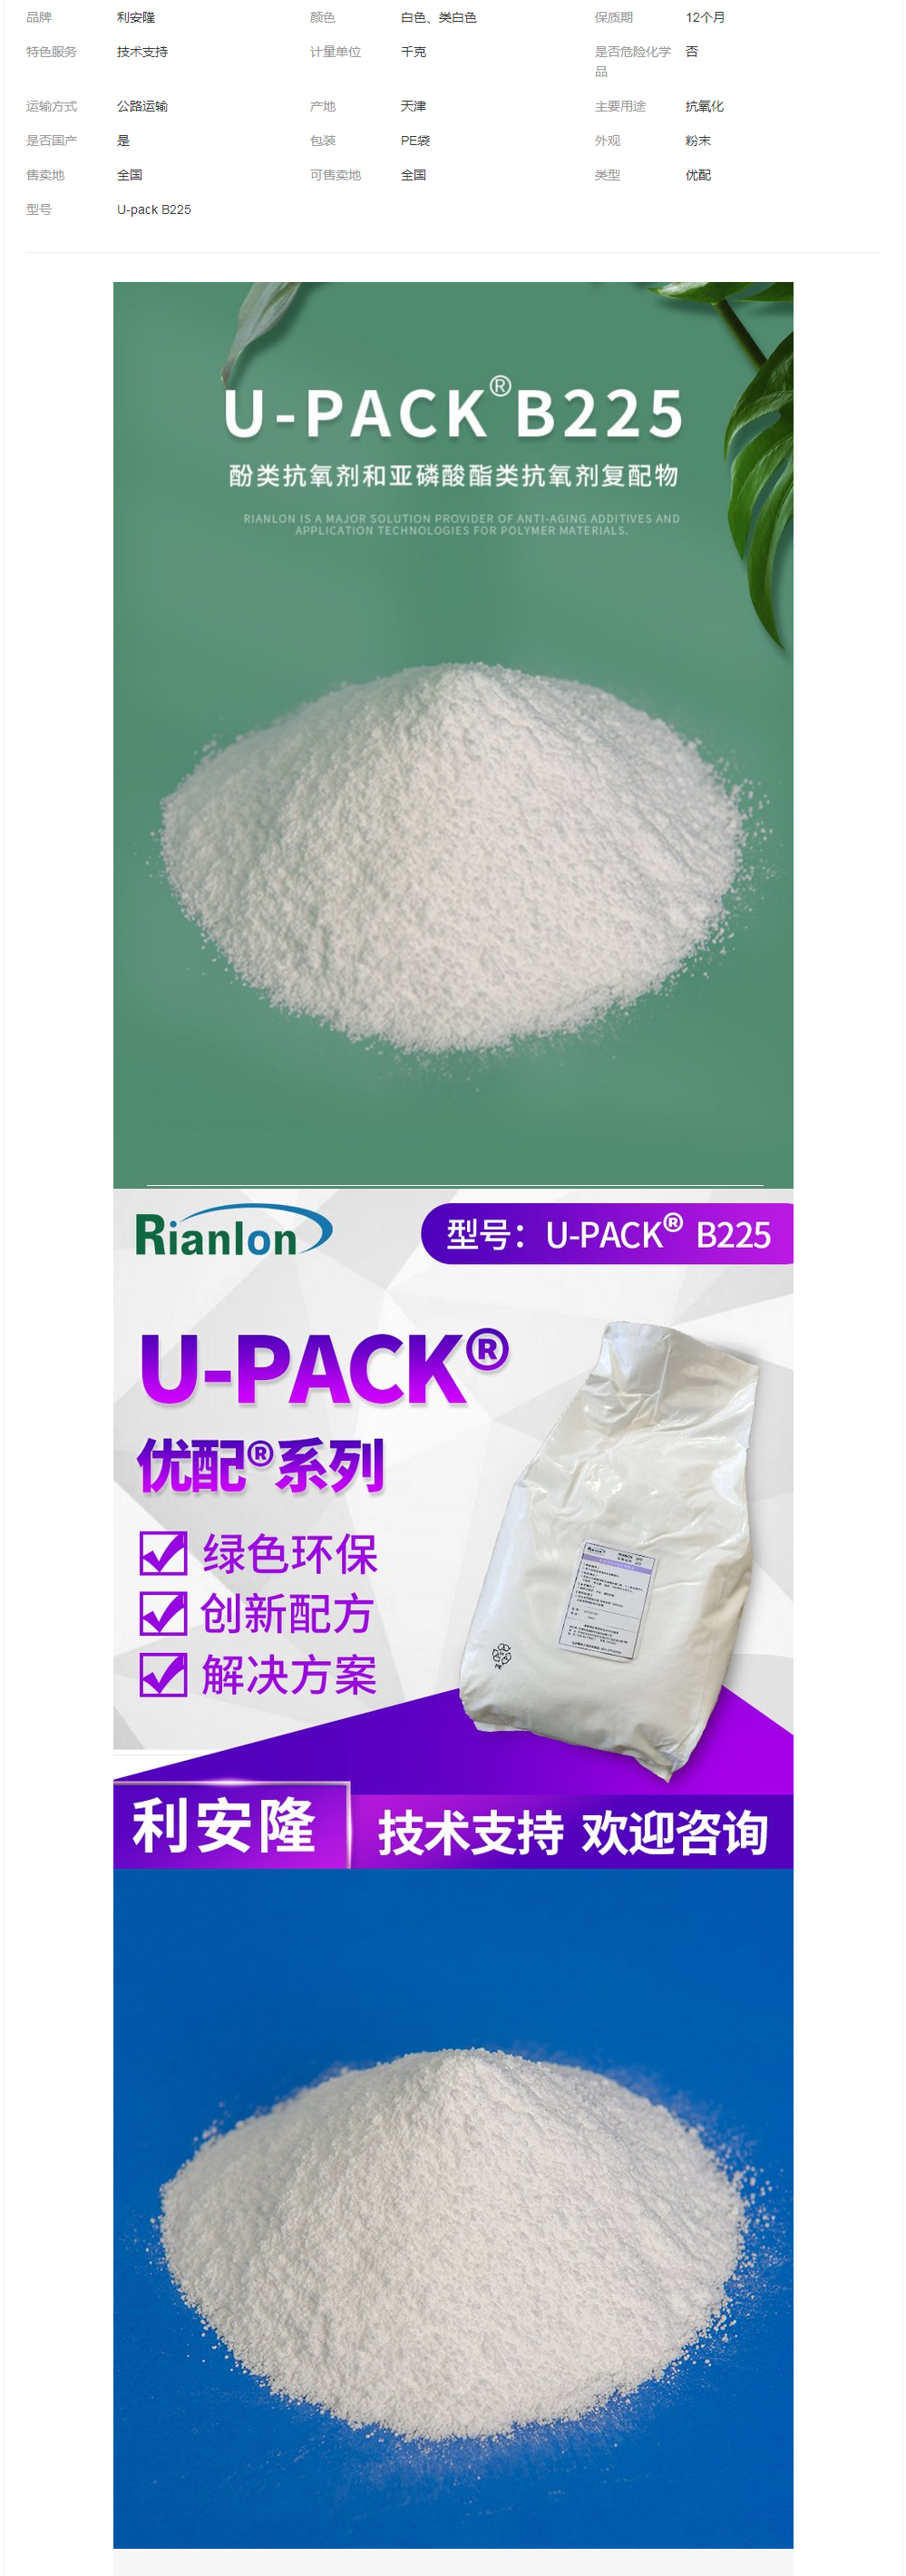 利安隆U-pack 225 优配UV225抗氧剂复配抗氧化剂.png